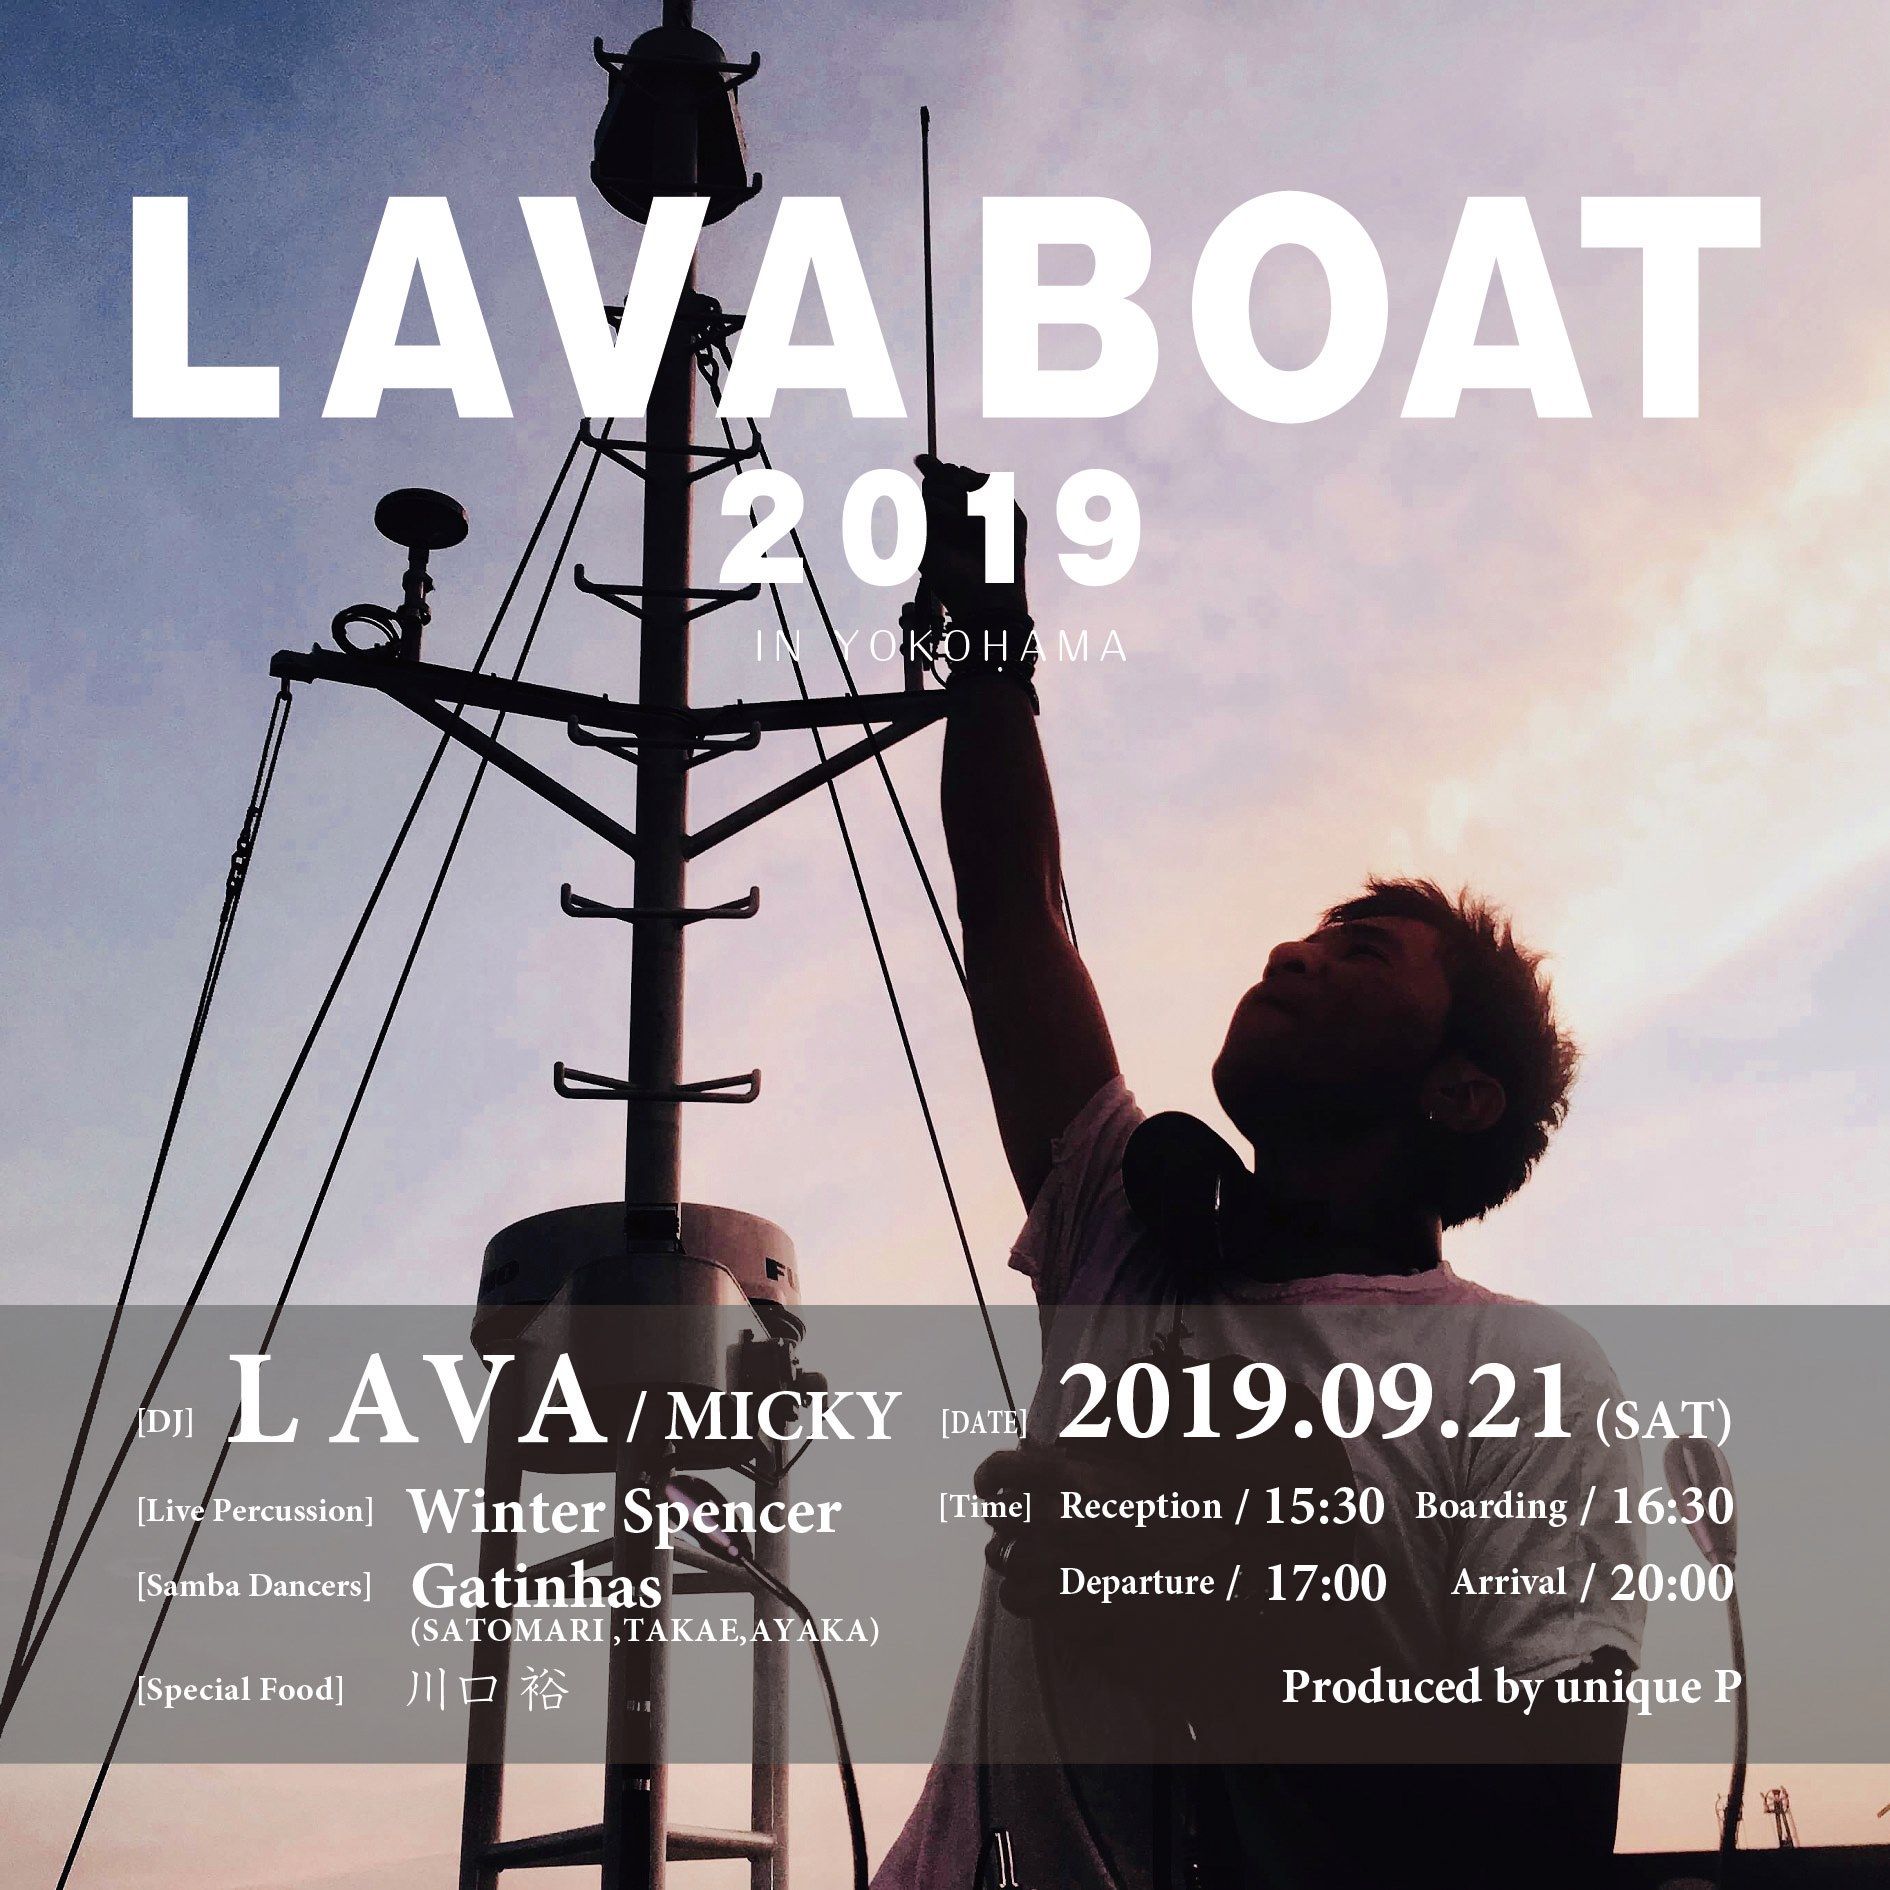 LAVA BOAT 2019 in YOKOHAMA